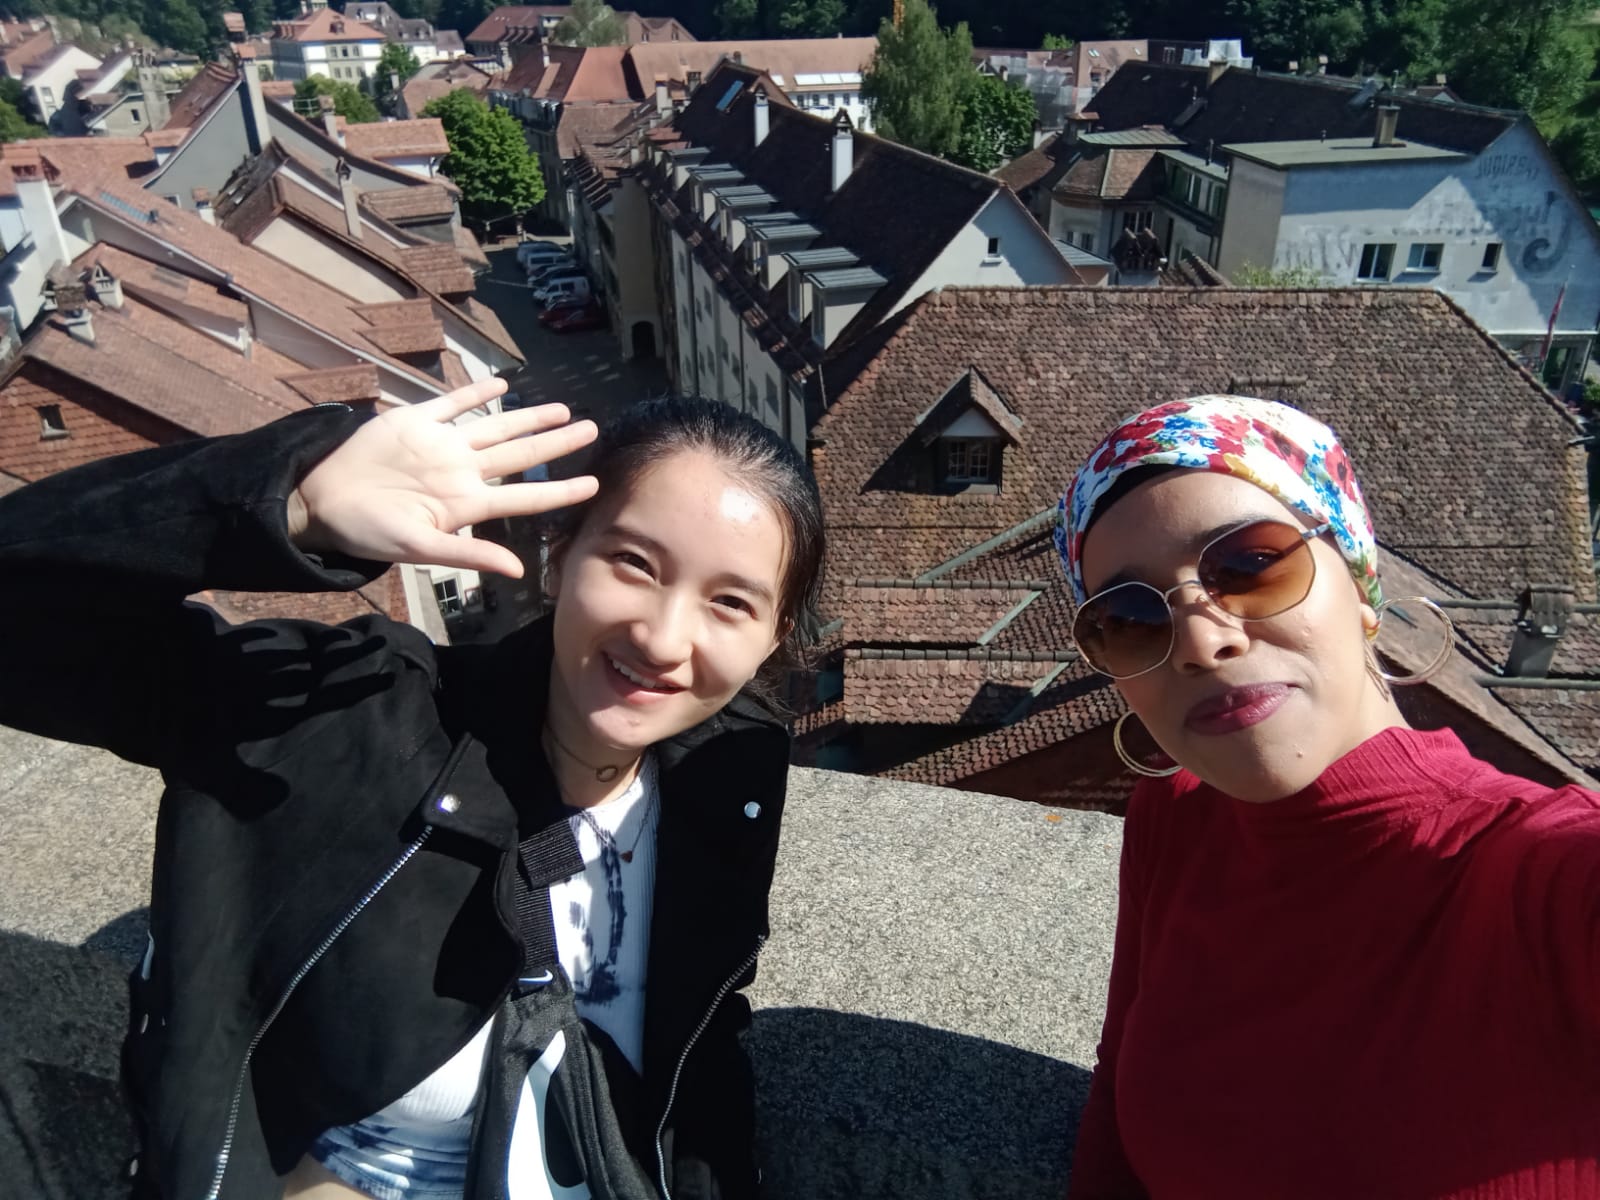 Chụp cùng bạn người Morocco trong chuyến đi đến Bern